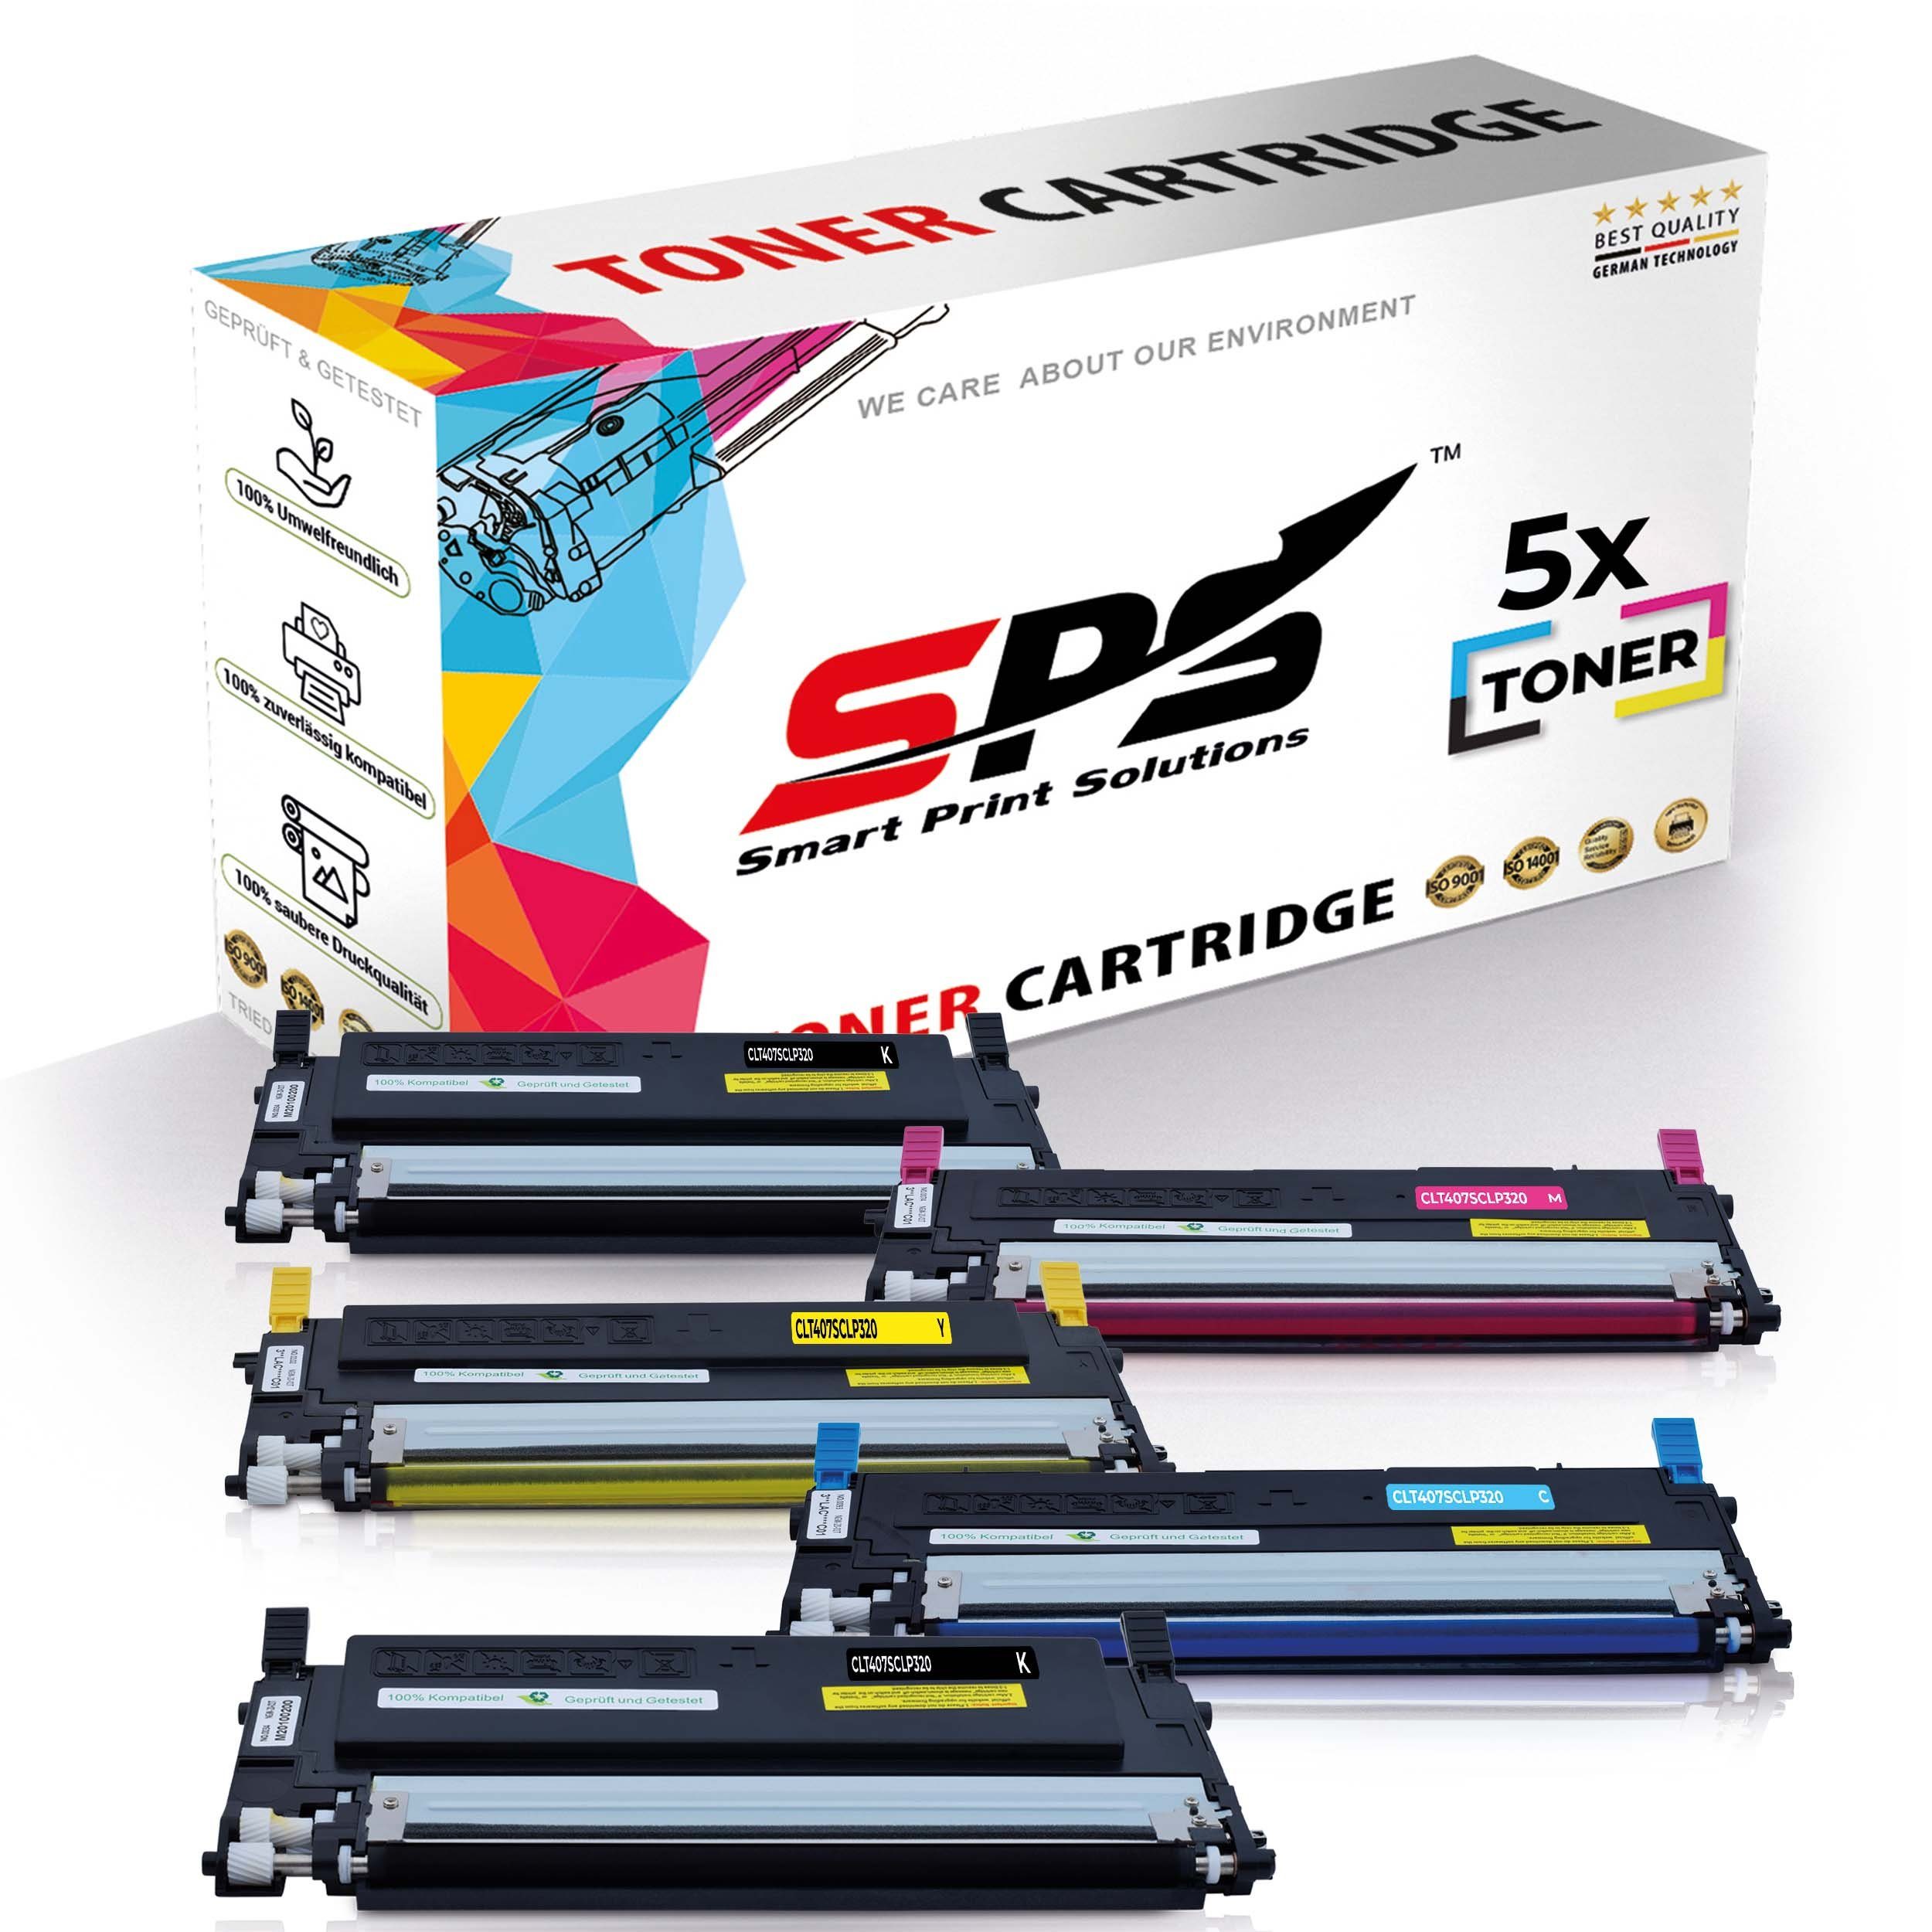 SPS Tonerkartusche Kompatibel für Samsung CLX-3185FW C407 CLT-C407S, (5er Pack)